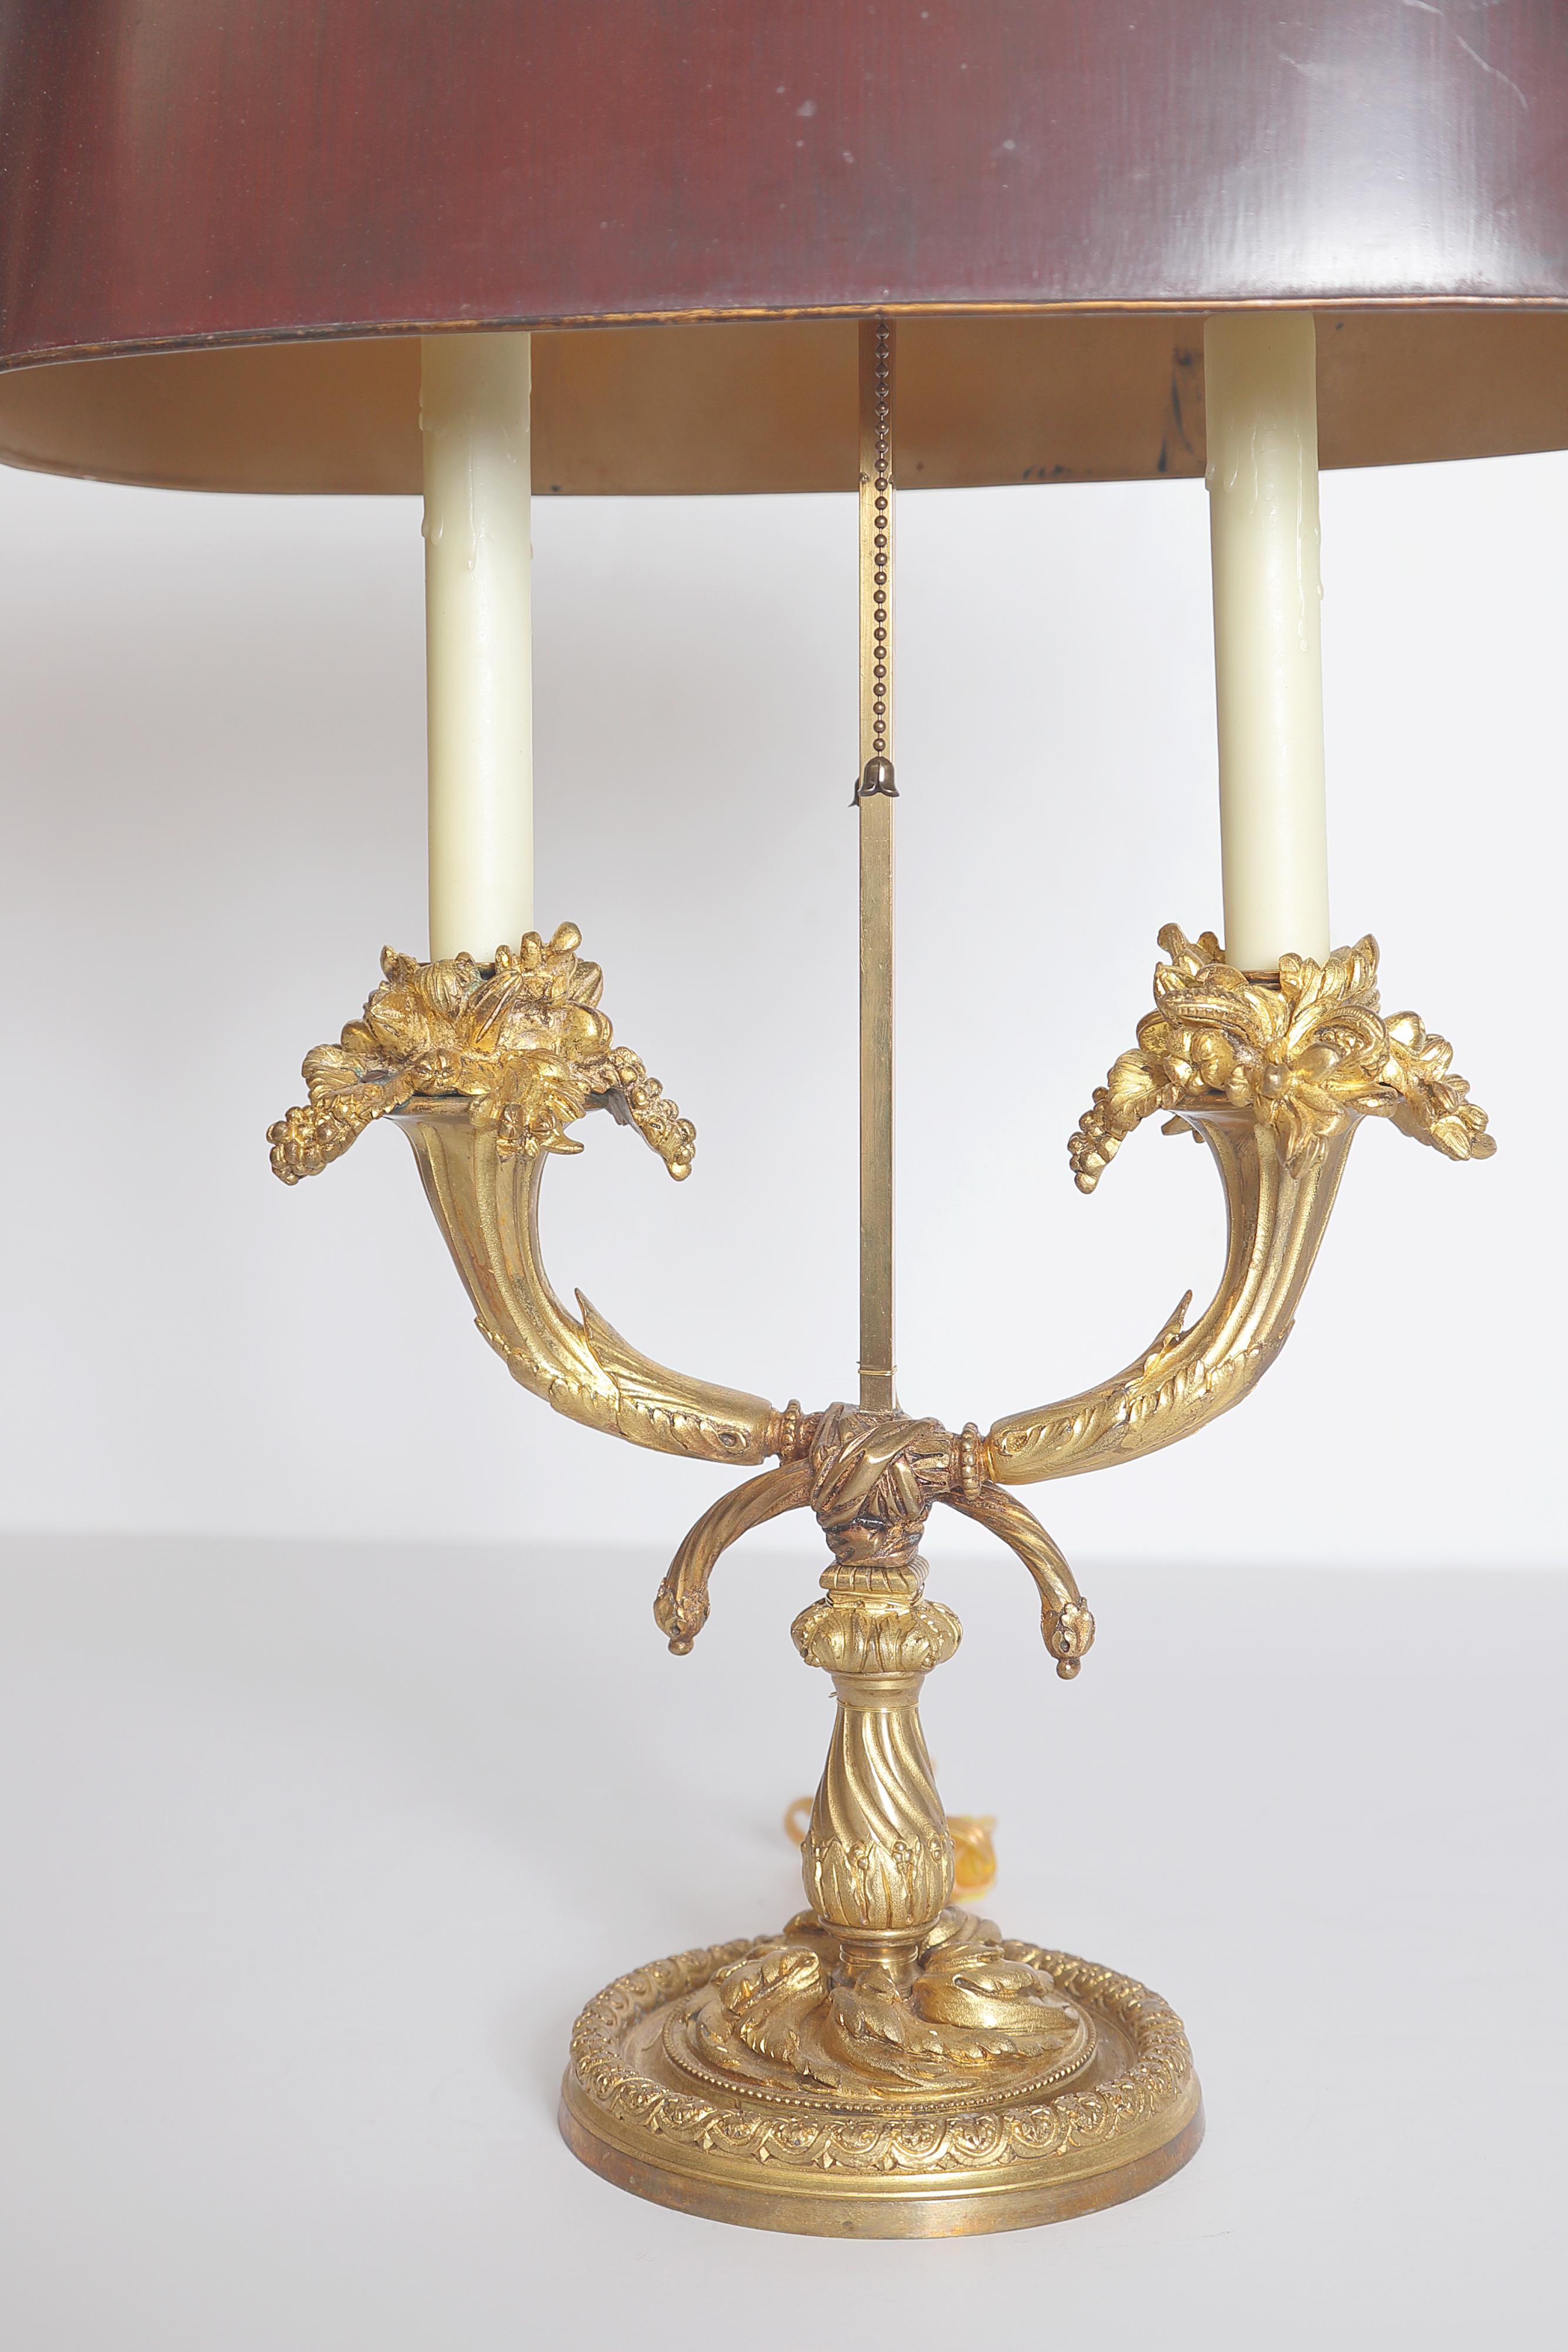 Bouillotte-Lampe im Stil Louis XVI des 19. Jahrhunderts aus Ormolu mit rotem Tole-Schirm, der über zwei mit Blättern verzierten Armen auf einem runden Sockel mit Perlen und Blumenmuster steht. Zweite Hälfte des 19. Jahrhunderts. (Alte Reparaturen).